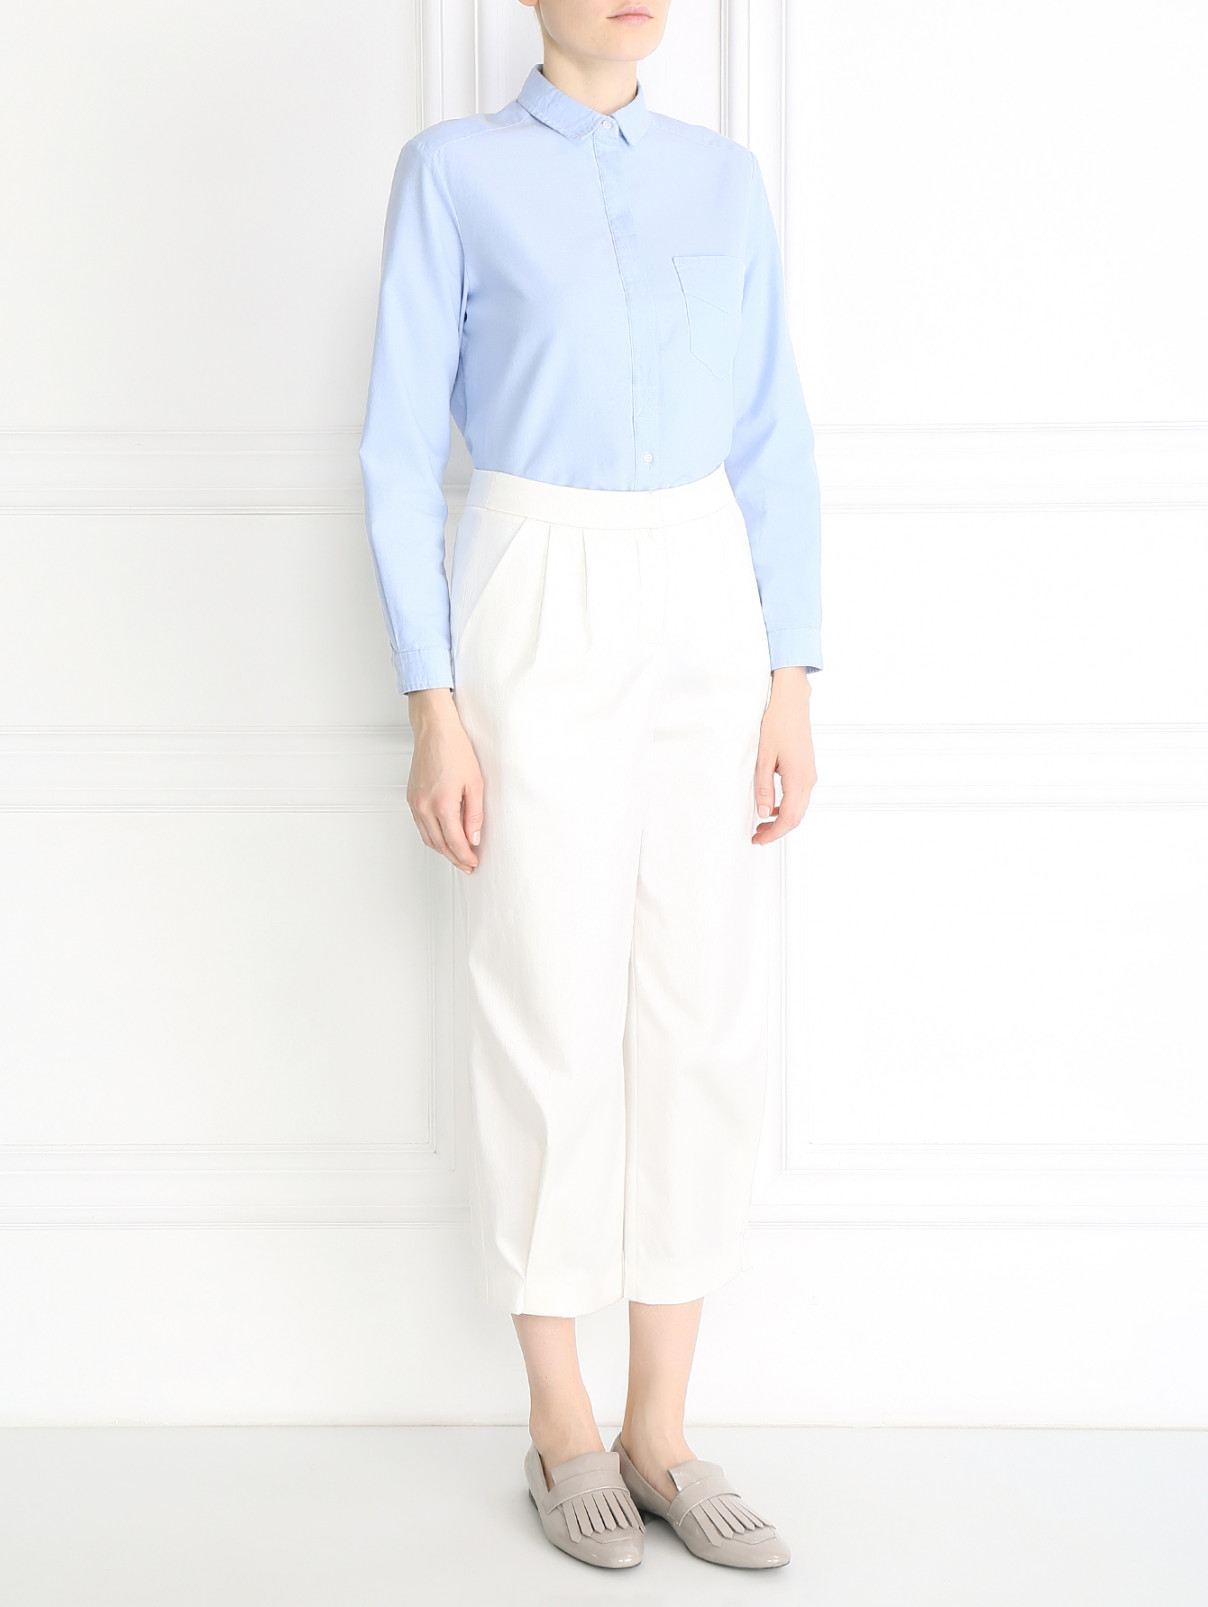 Укороченные брюки из хлопка прямого кроя A La Russe  –  Модель Общий вид  – Цвет:  Белый